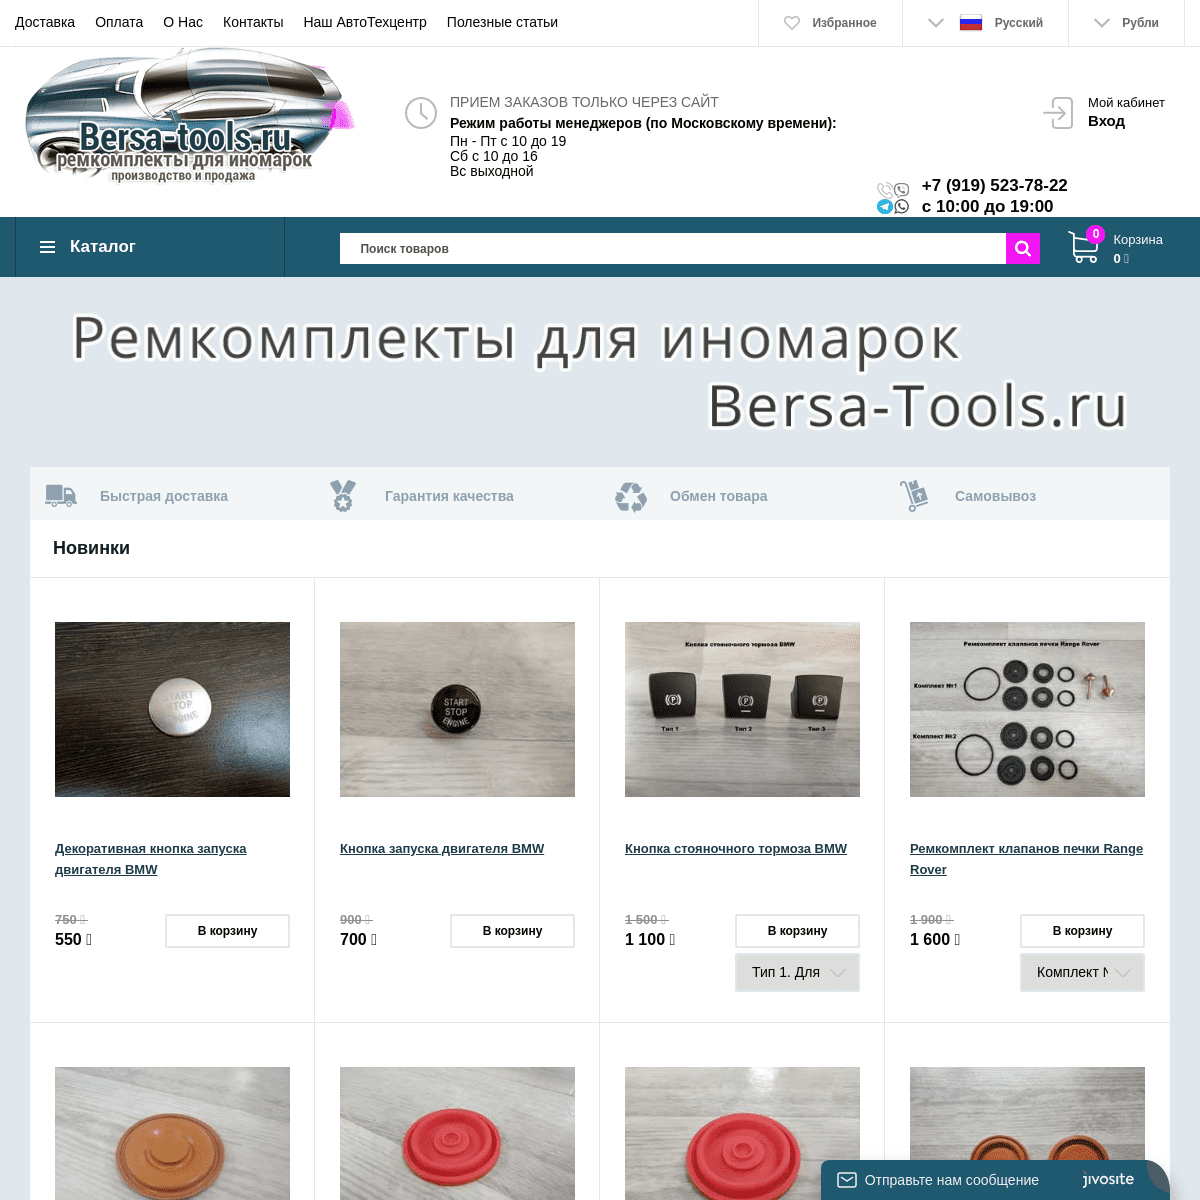 Bersa-Tools.ru: производитель мембран КВКГ и ремкомплектов для иномарок